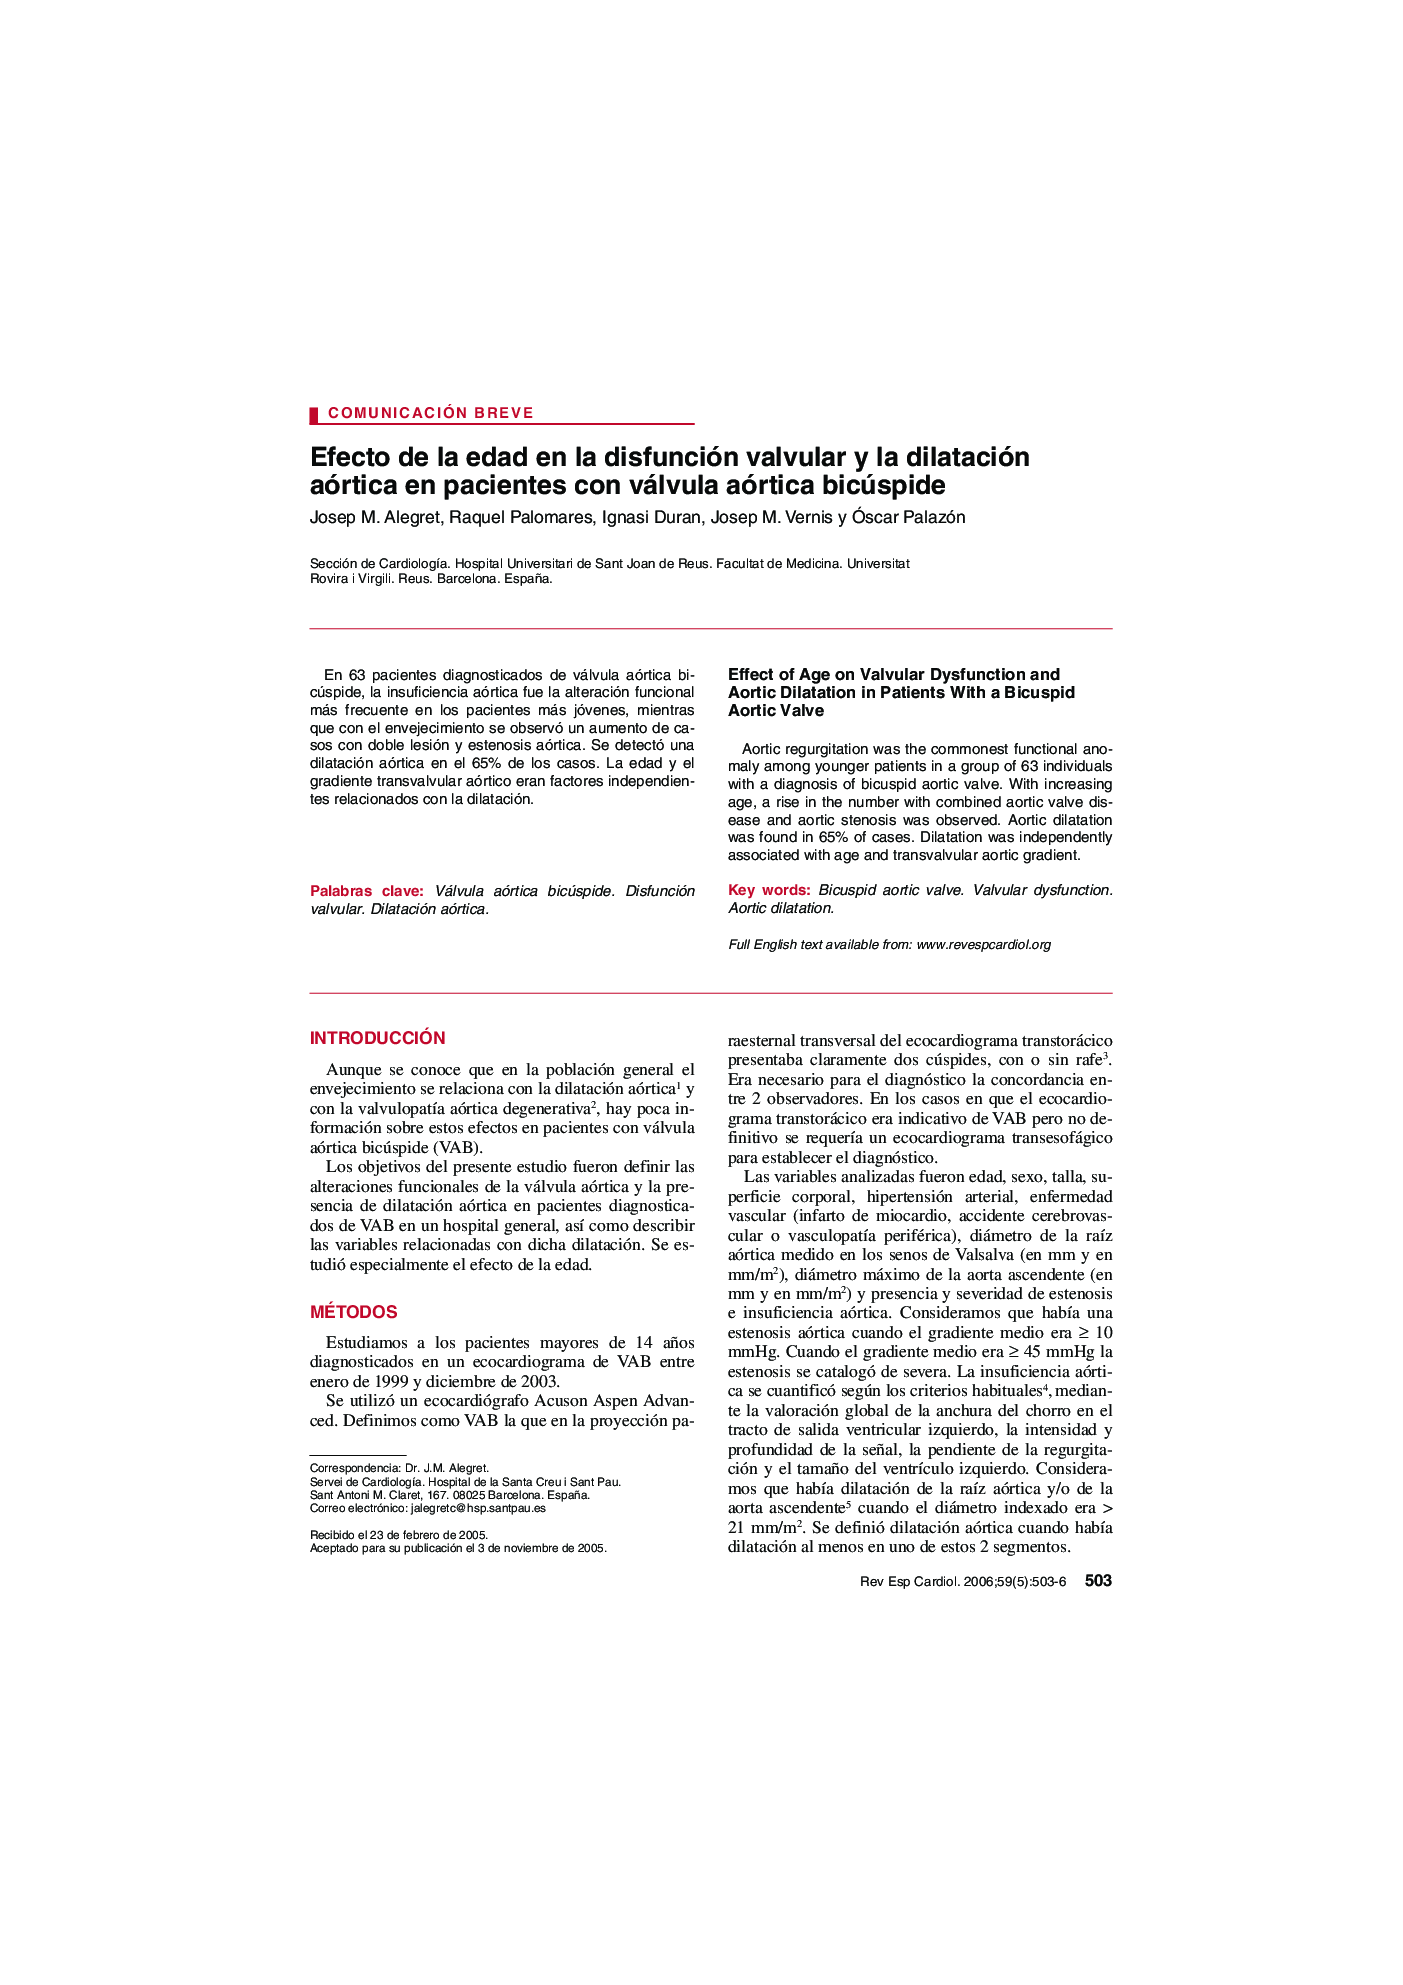 Efecto de la edad en la disfunción valvular y la dilatación aórtica en pacientes con válvula aórtica bicúspide